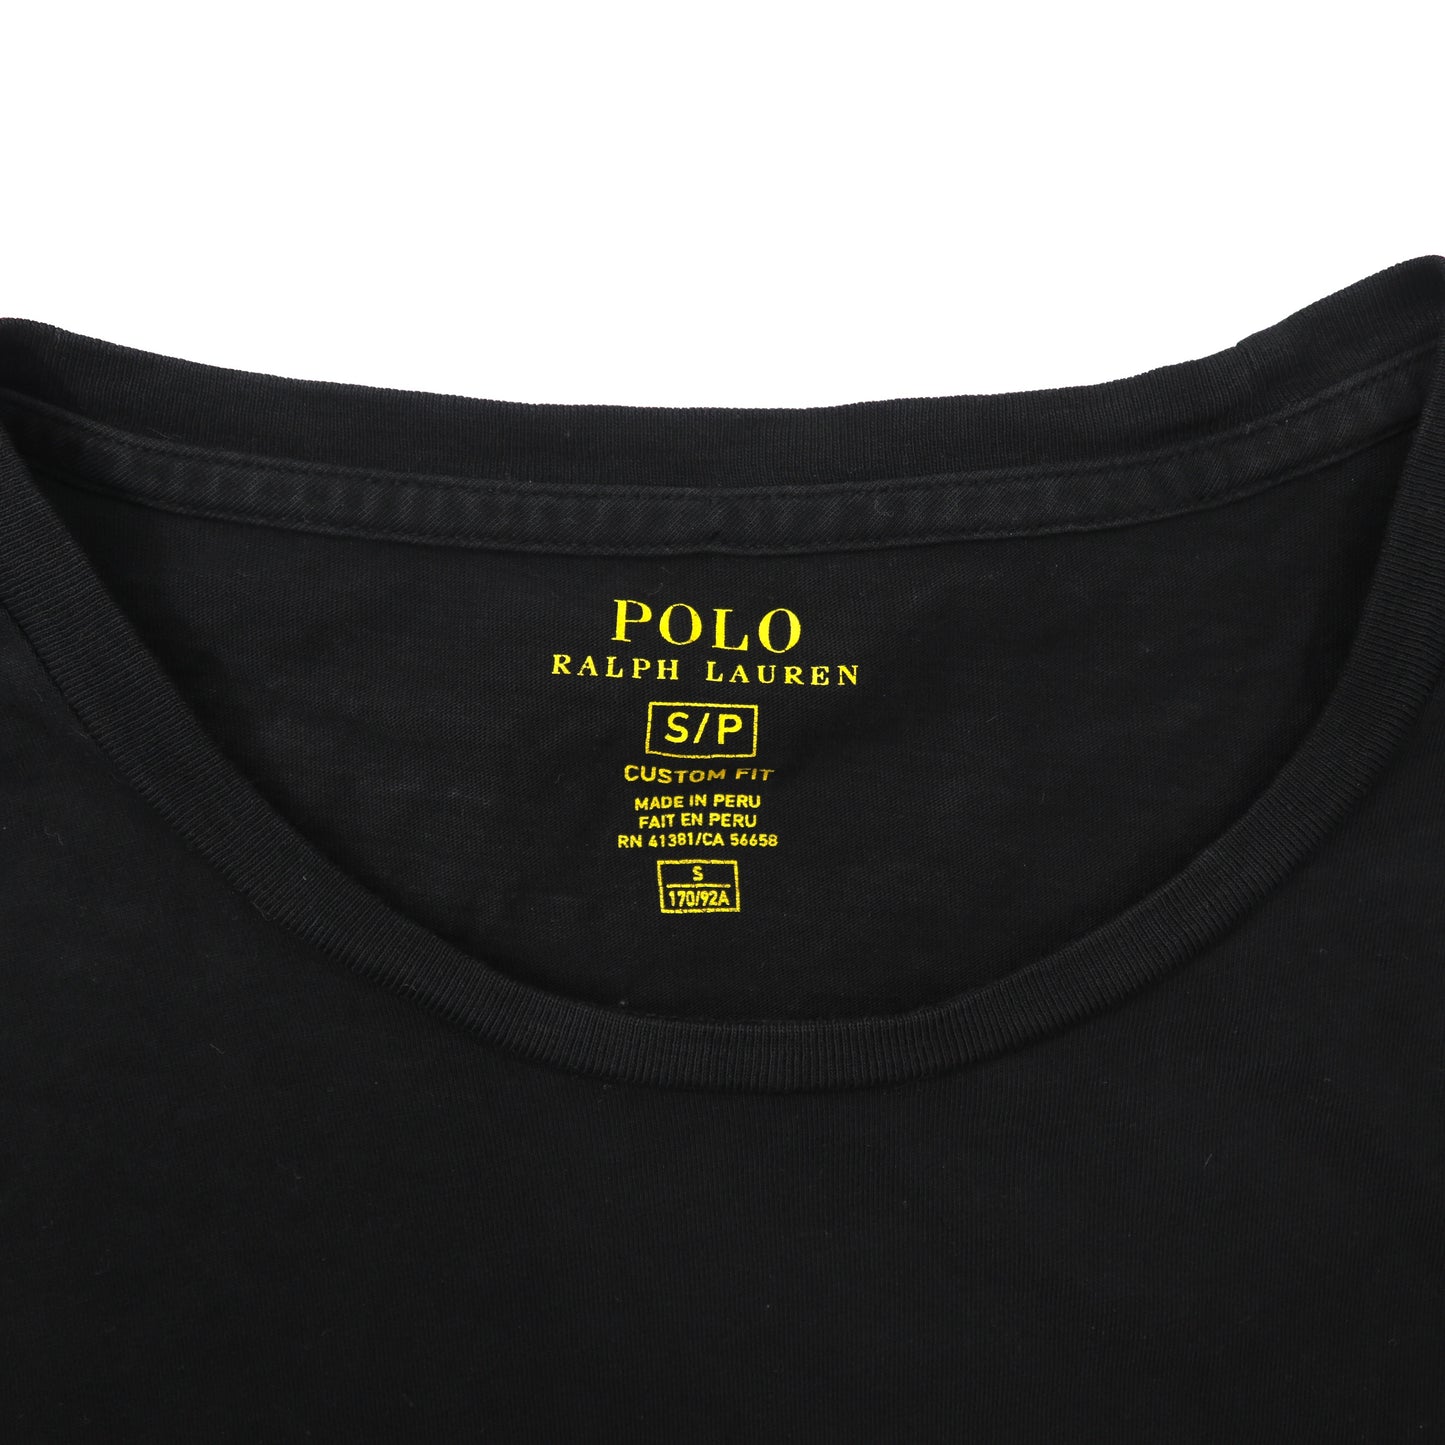 POLO RALPH LAUREN Tシャツ S ブラック コットン LAS VEGAS プリント ペルー製